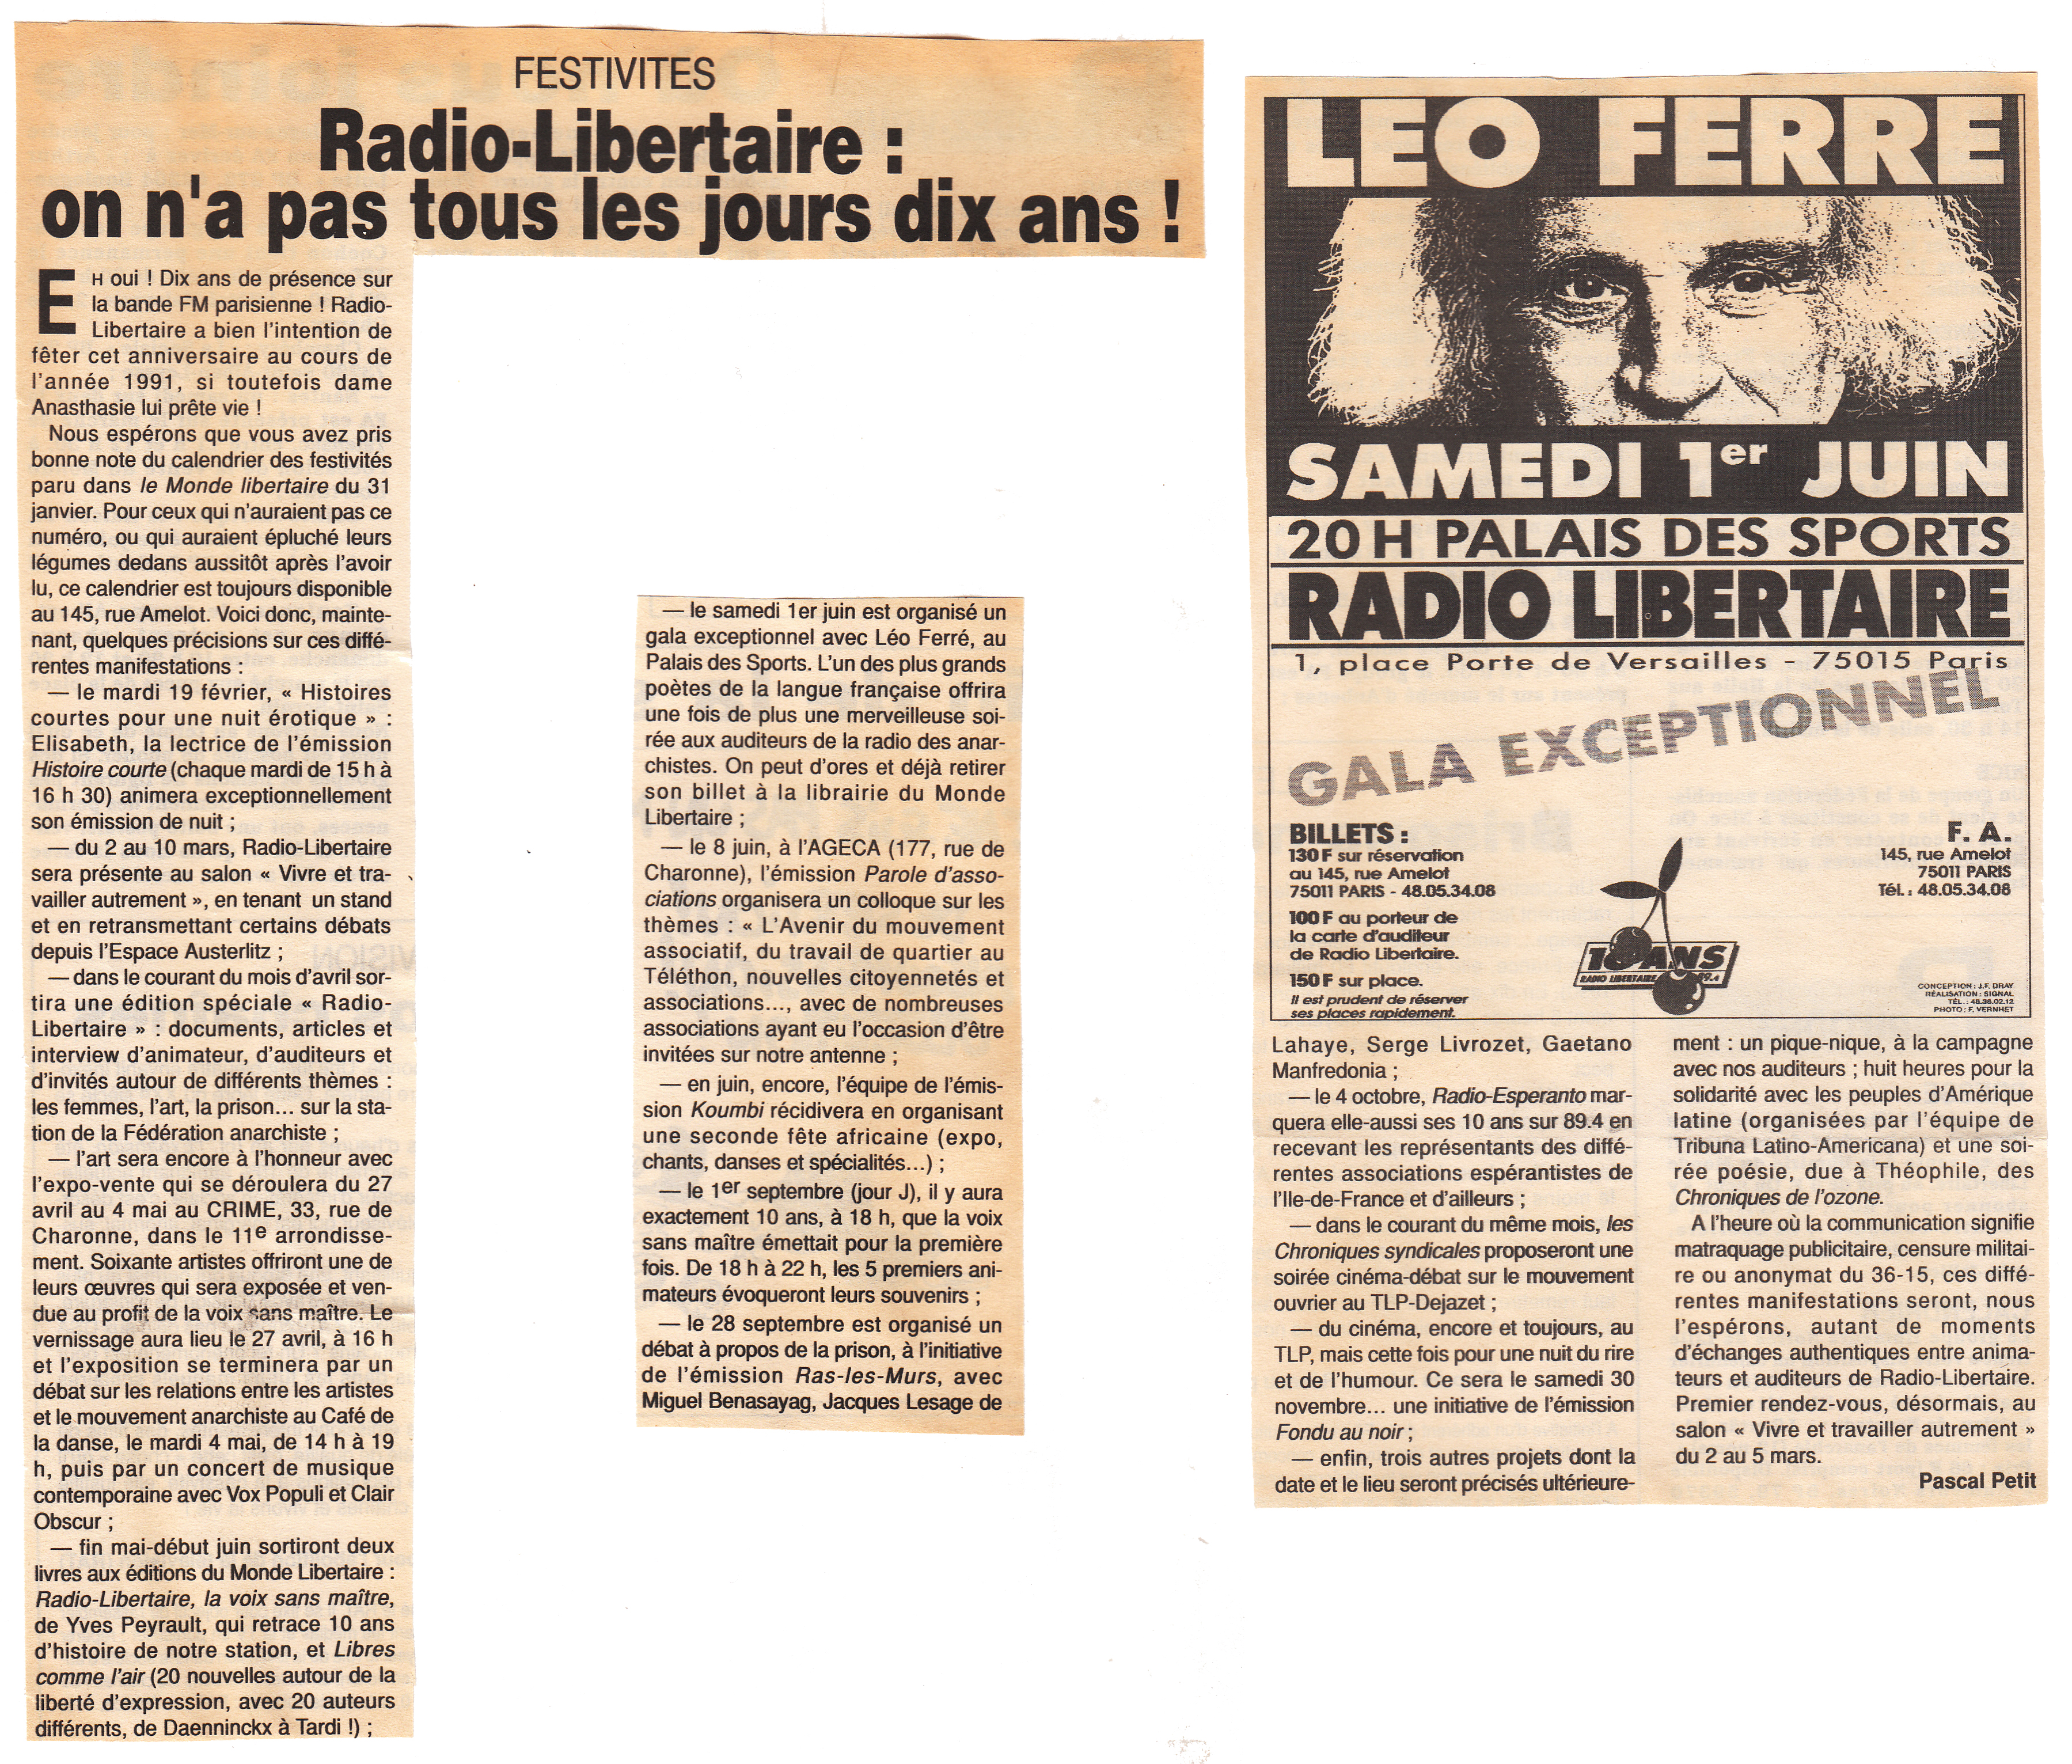 Léo Ferré - Le Monde libertaire, du 14 au 20/02/1991